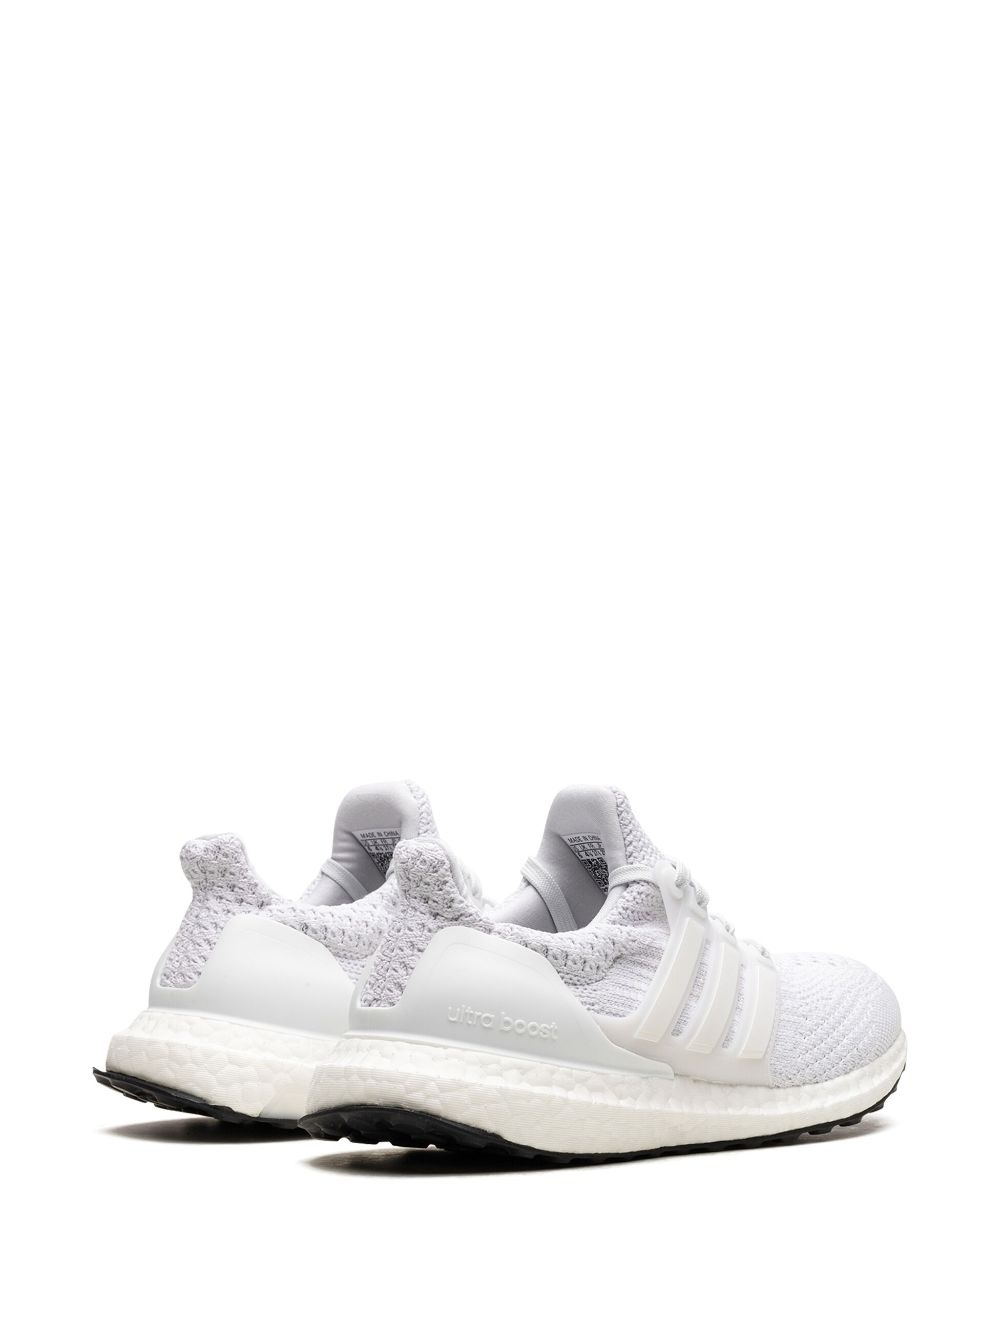 Ultraboost 5.0 DNA W "Triple white" sneakers - 3